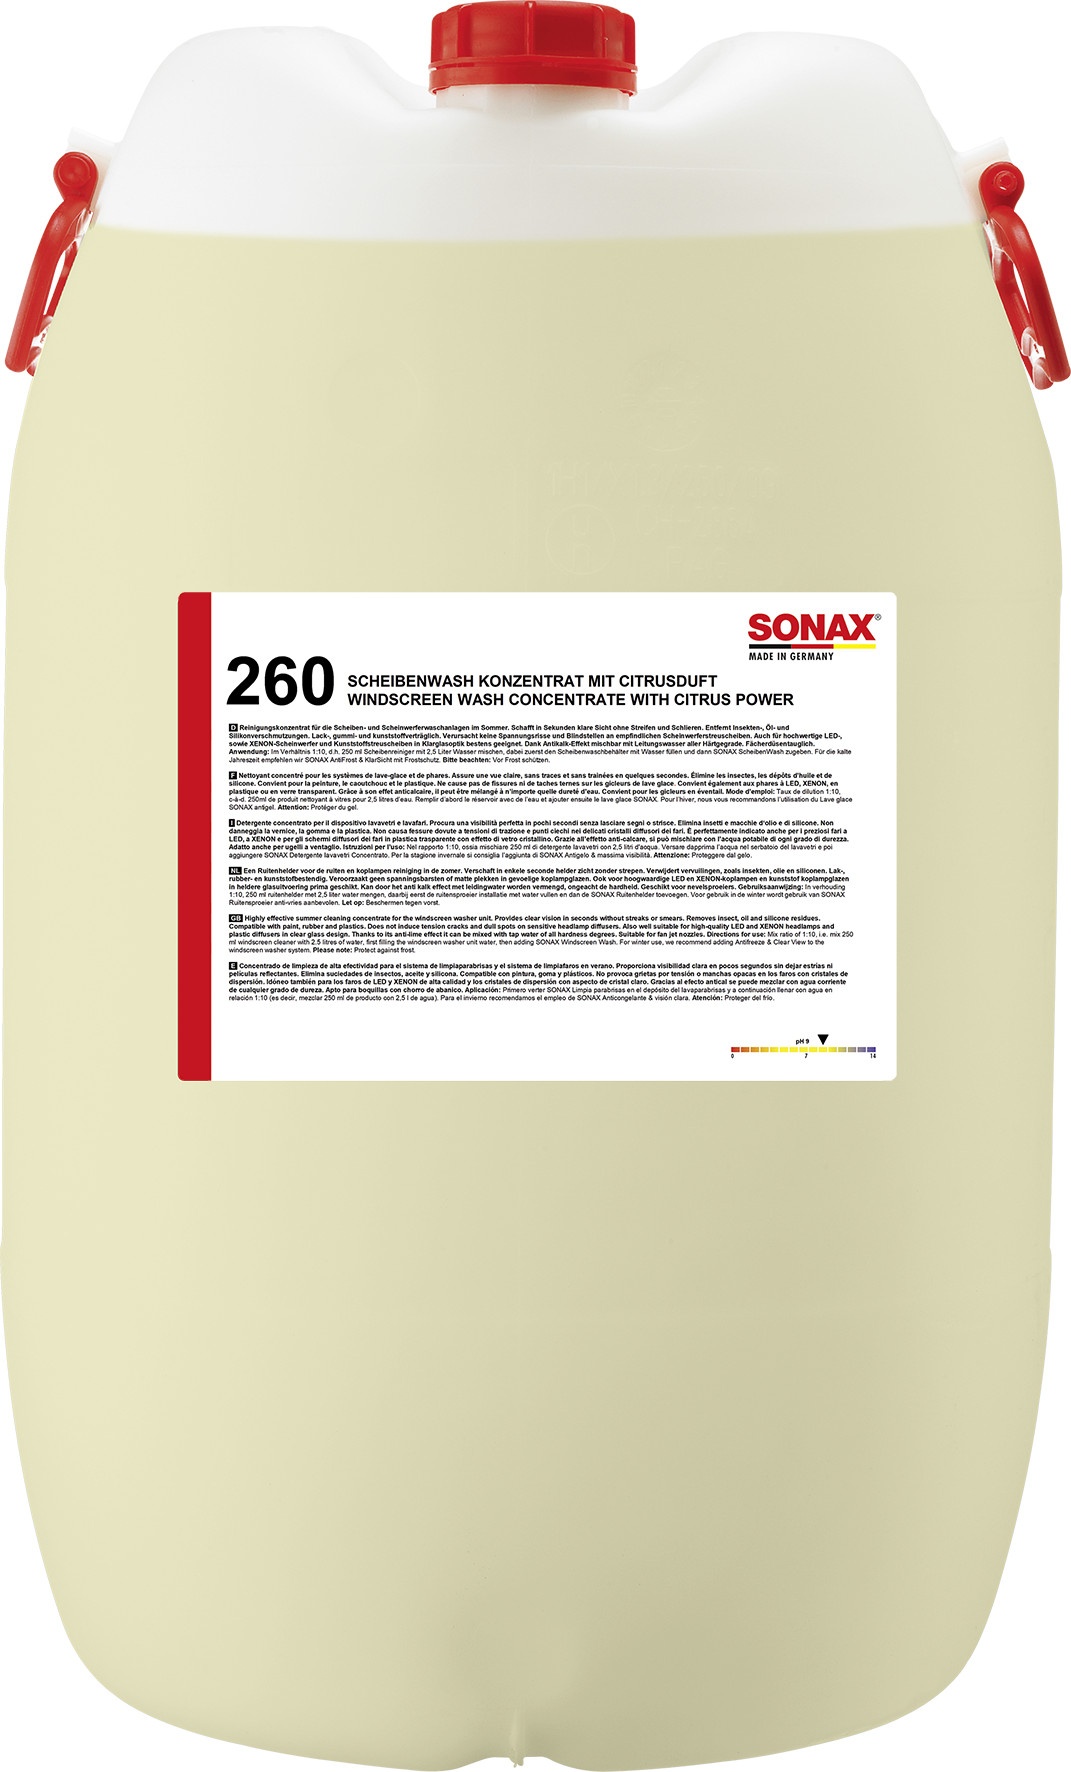 SONAX Windscreen Wash concentraat 1:10 citrus 60L